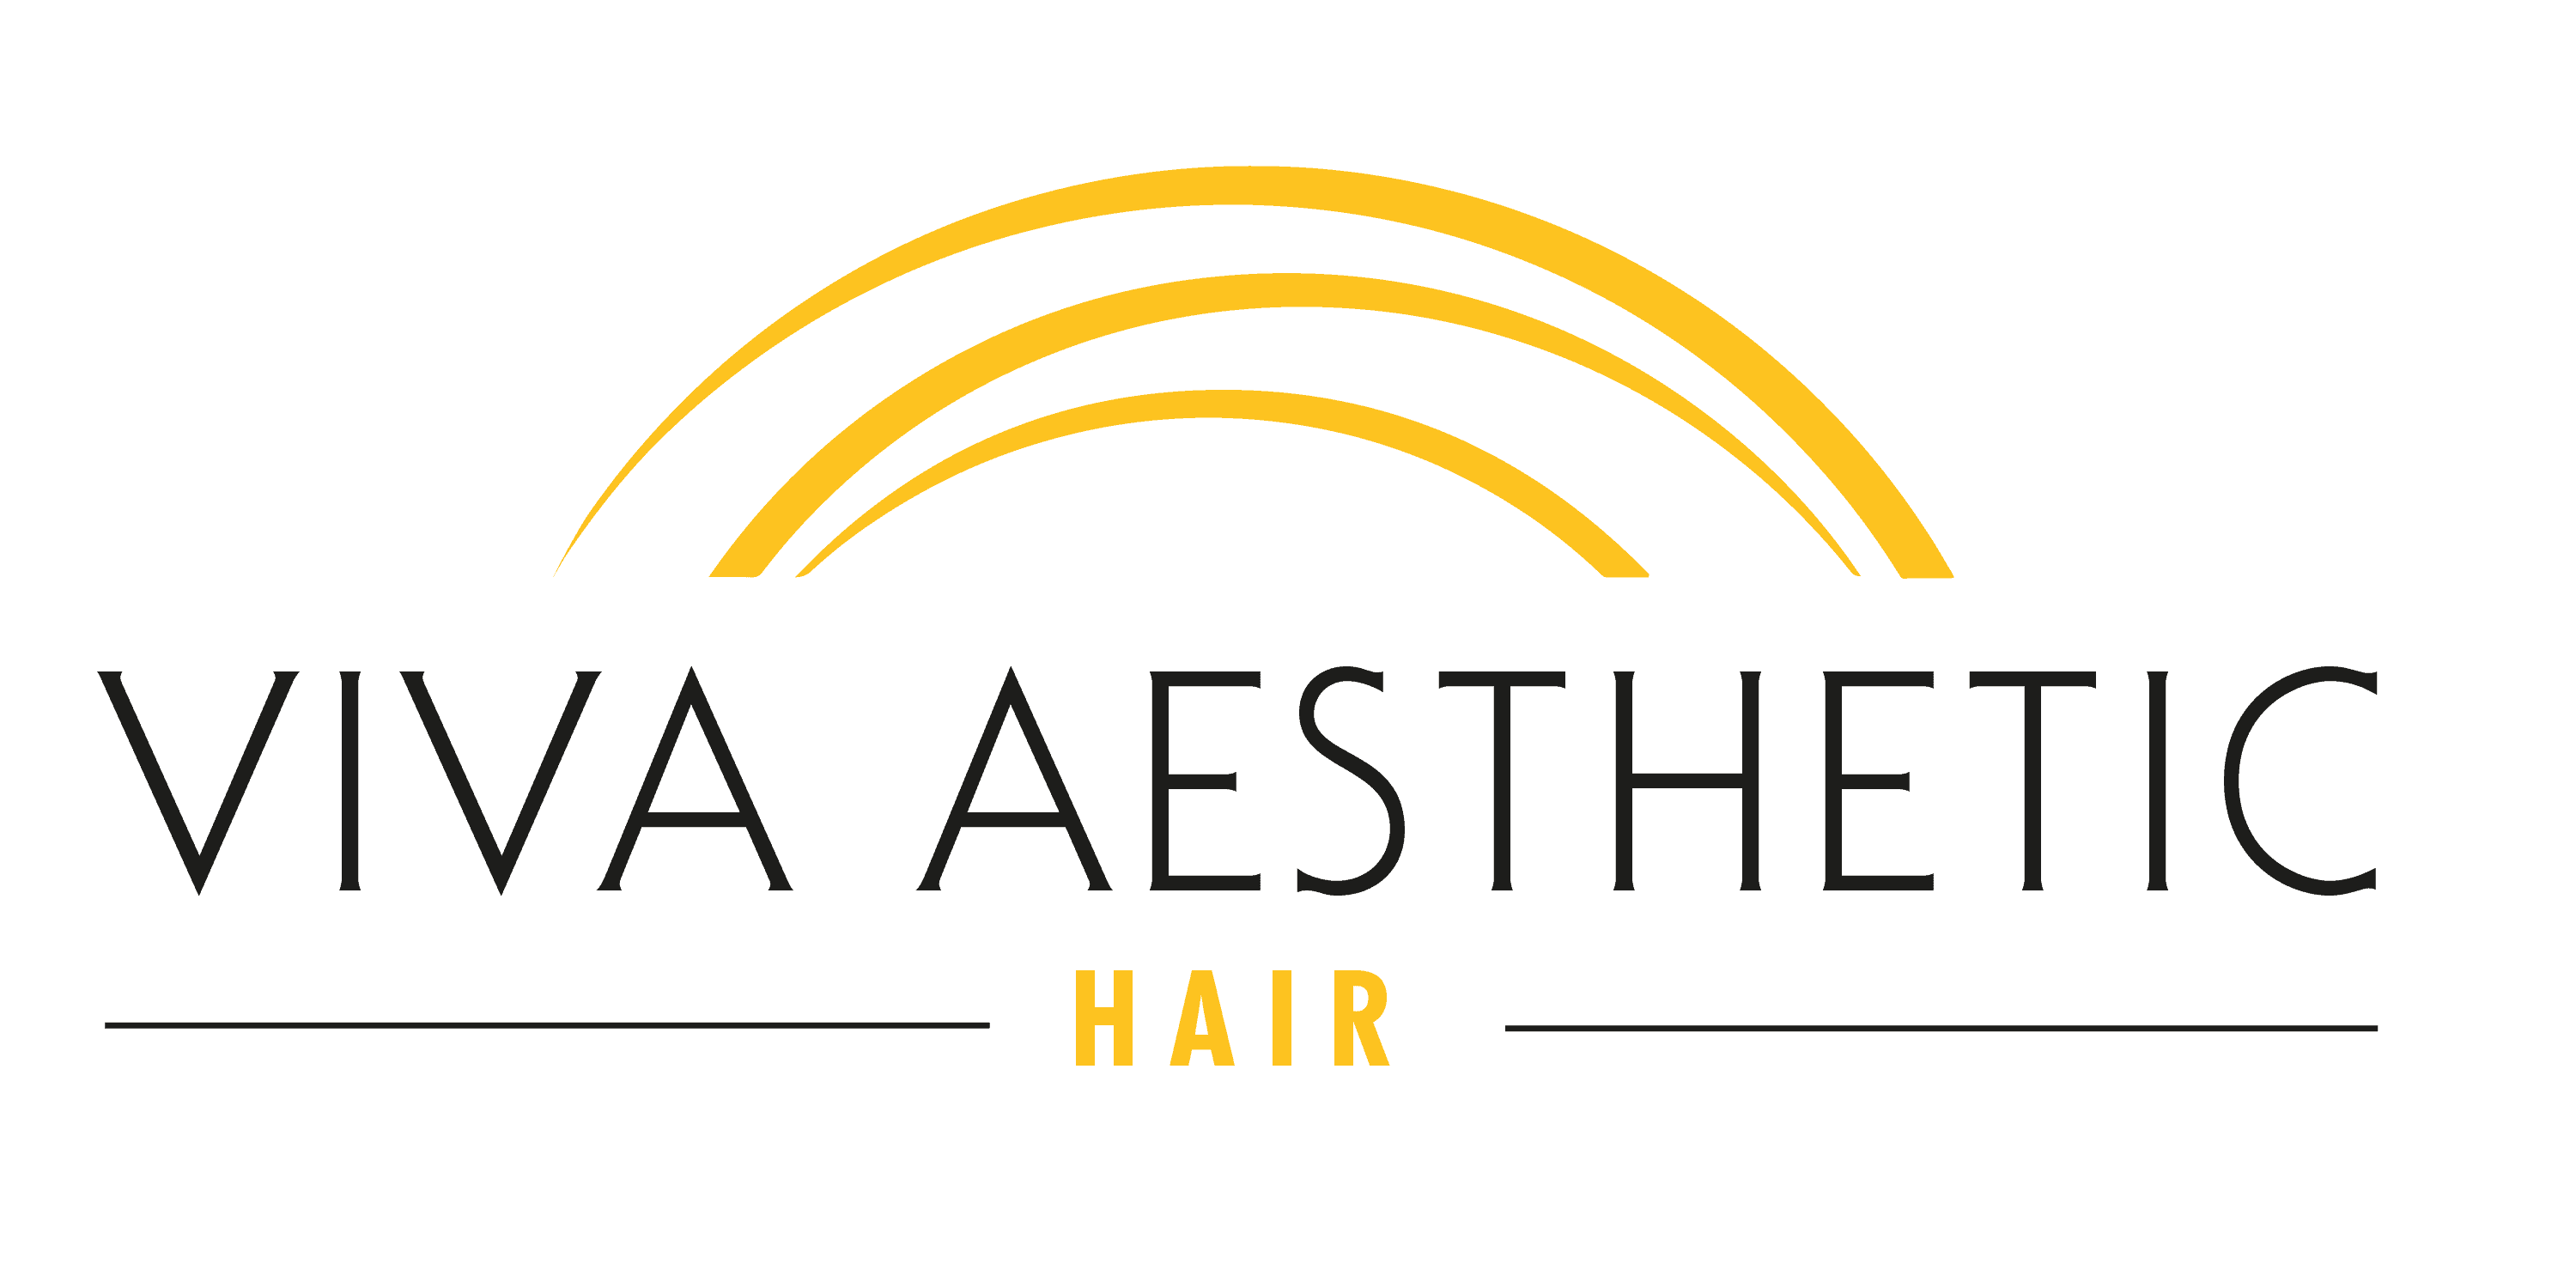 VIVA AESTHETIC HAIR